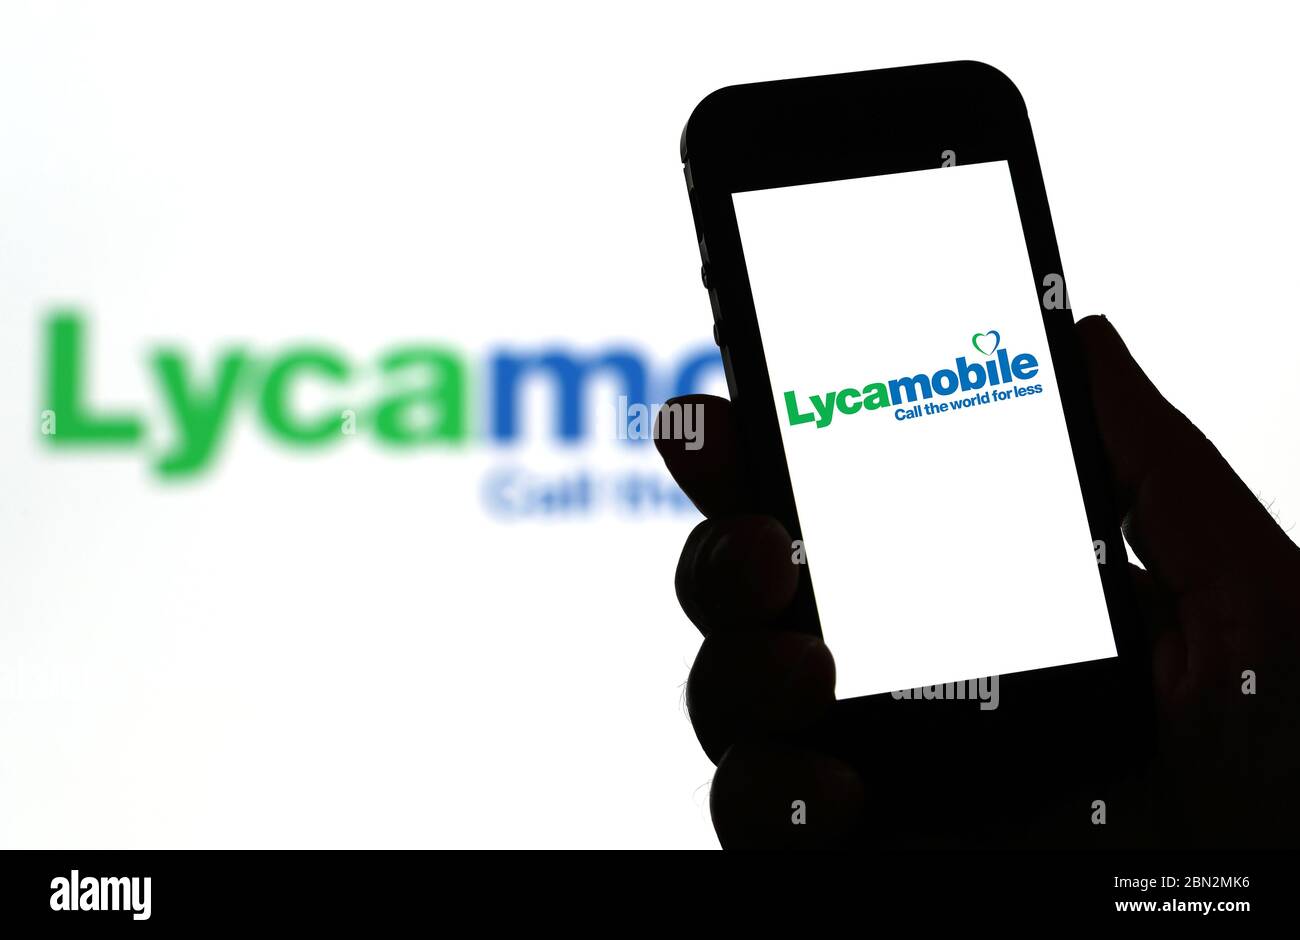 Lycamobile mobile Banque de photographies et d'images à haute résolution -  Alamy